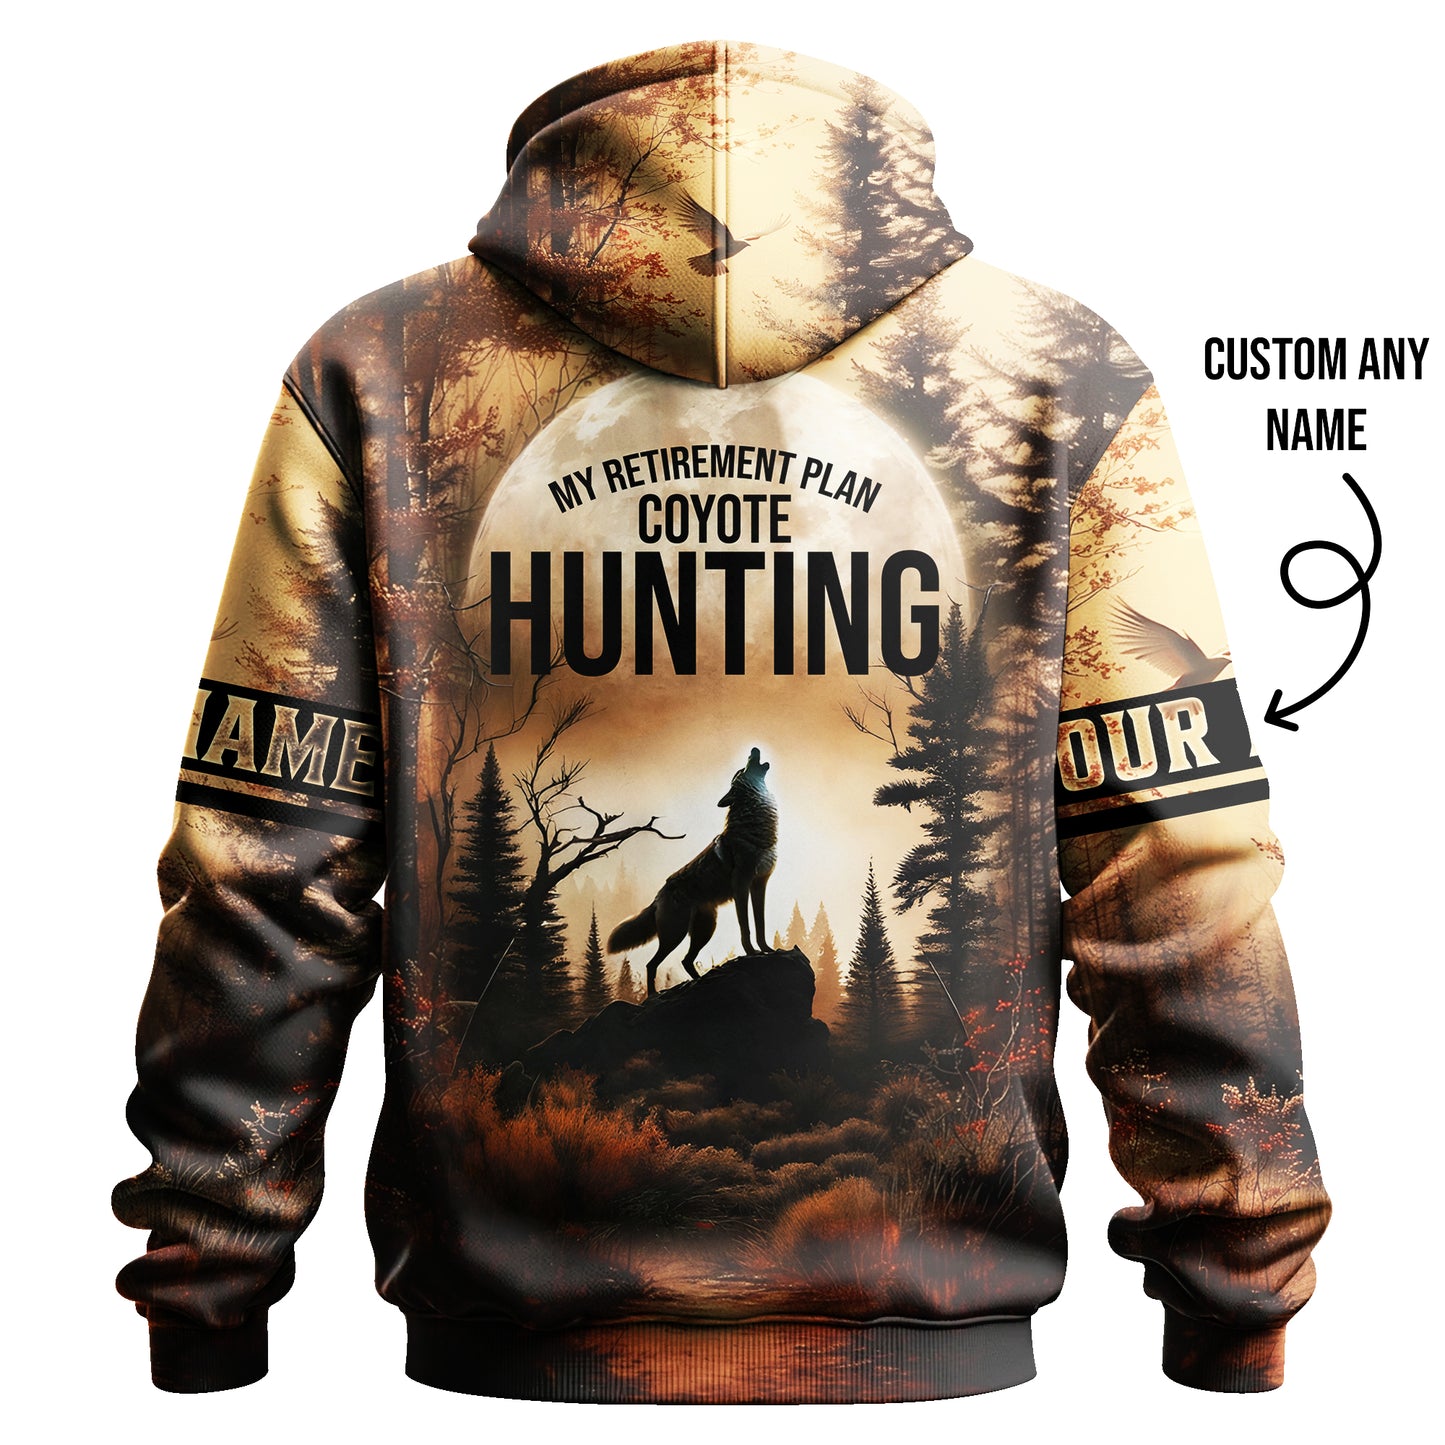 3D Hunting Hoodie - Coyote Hunting Retirement Plan